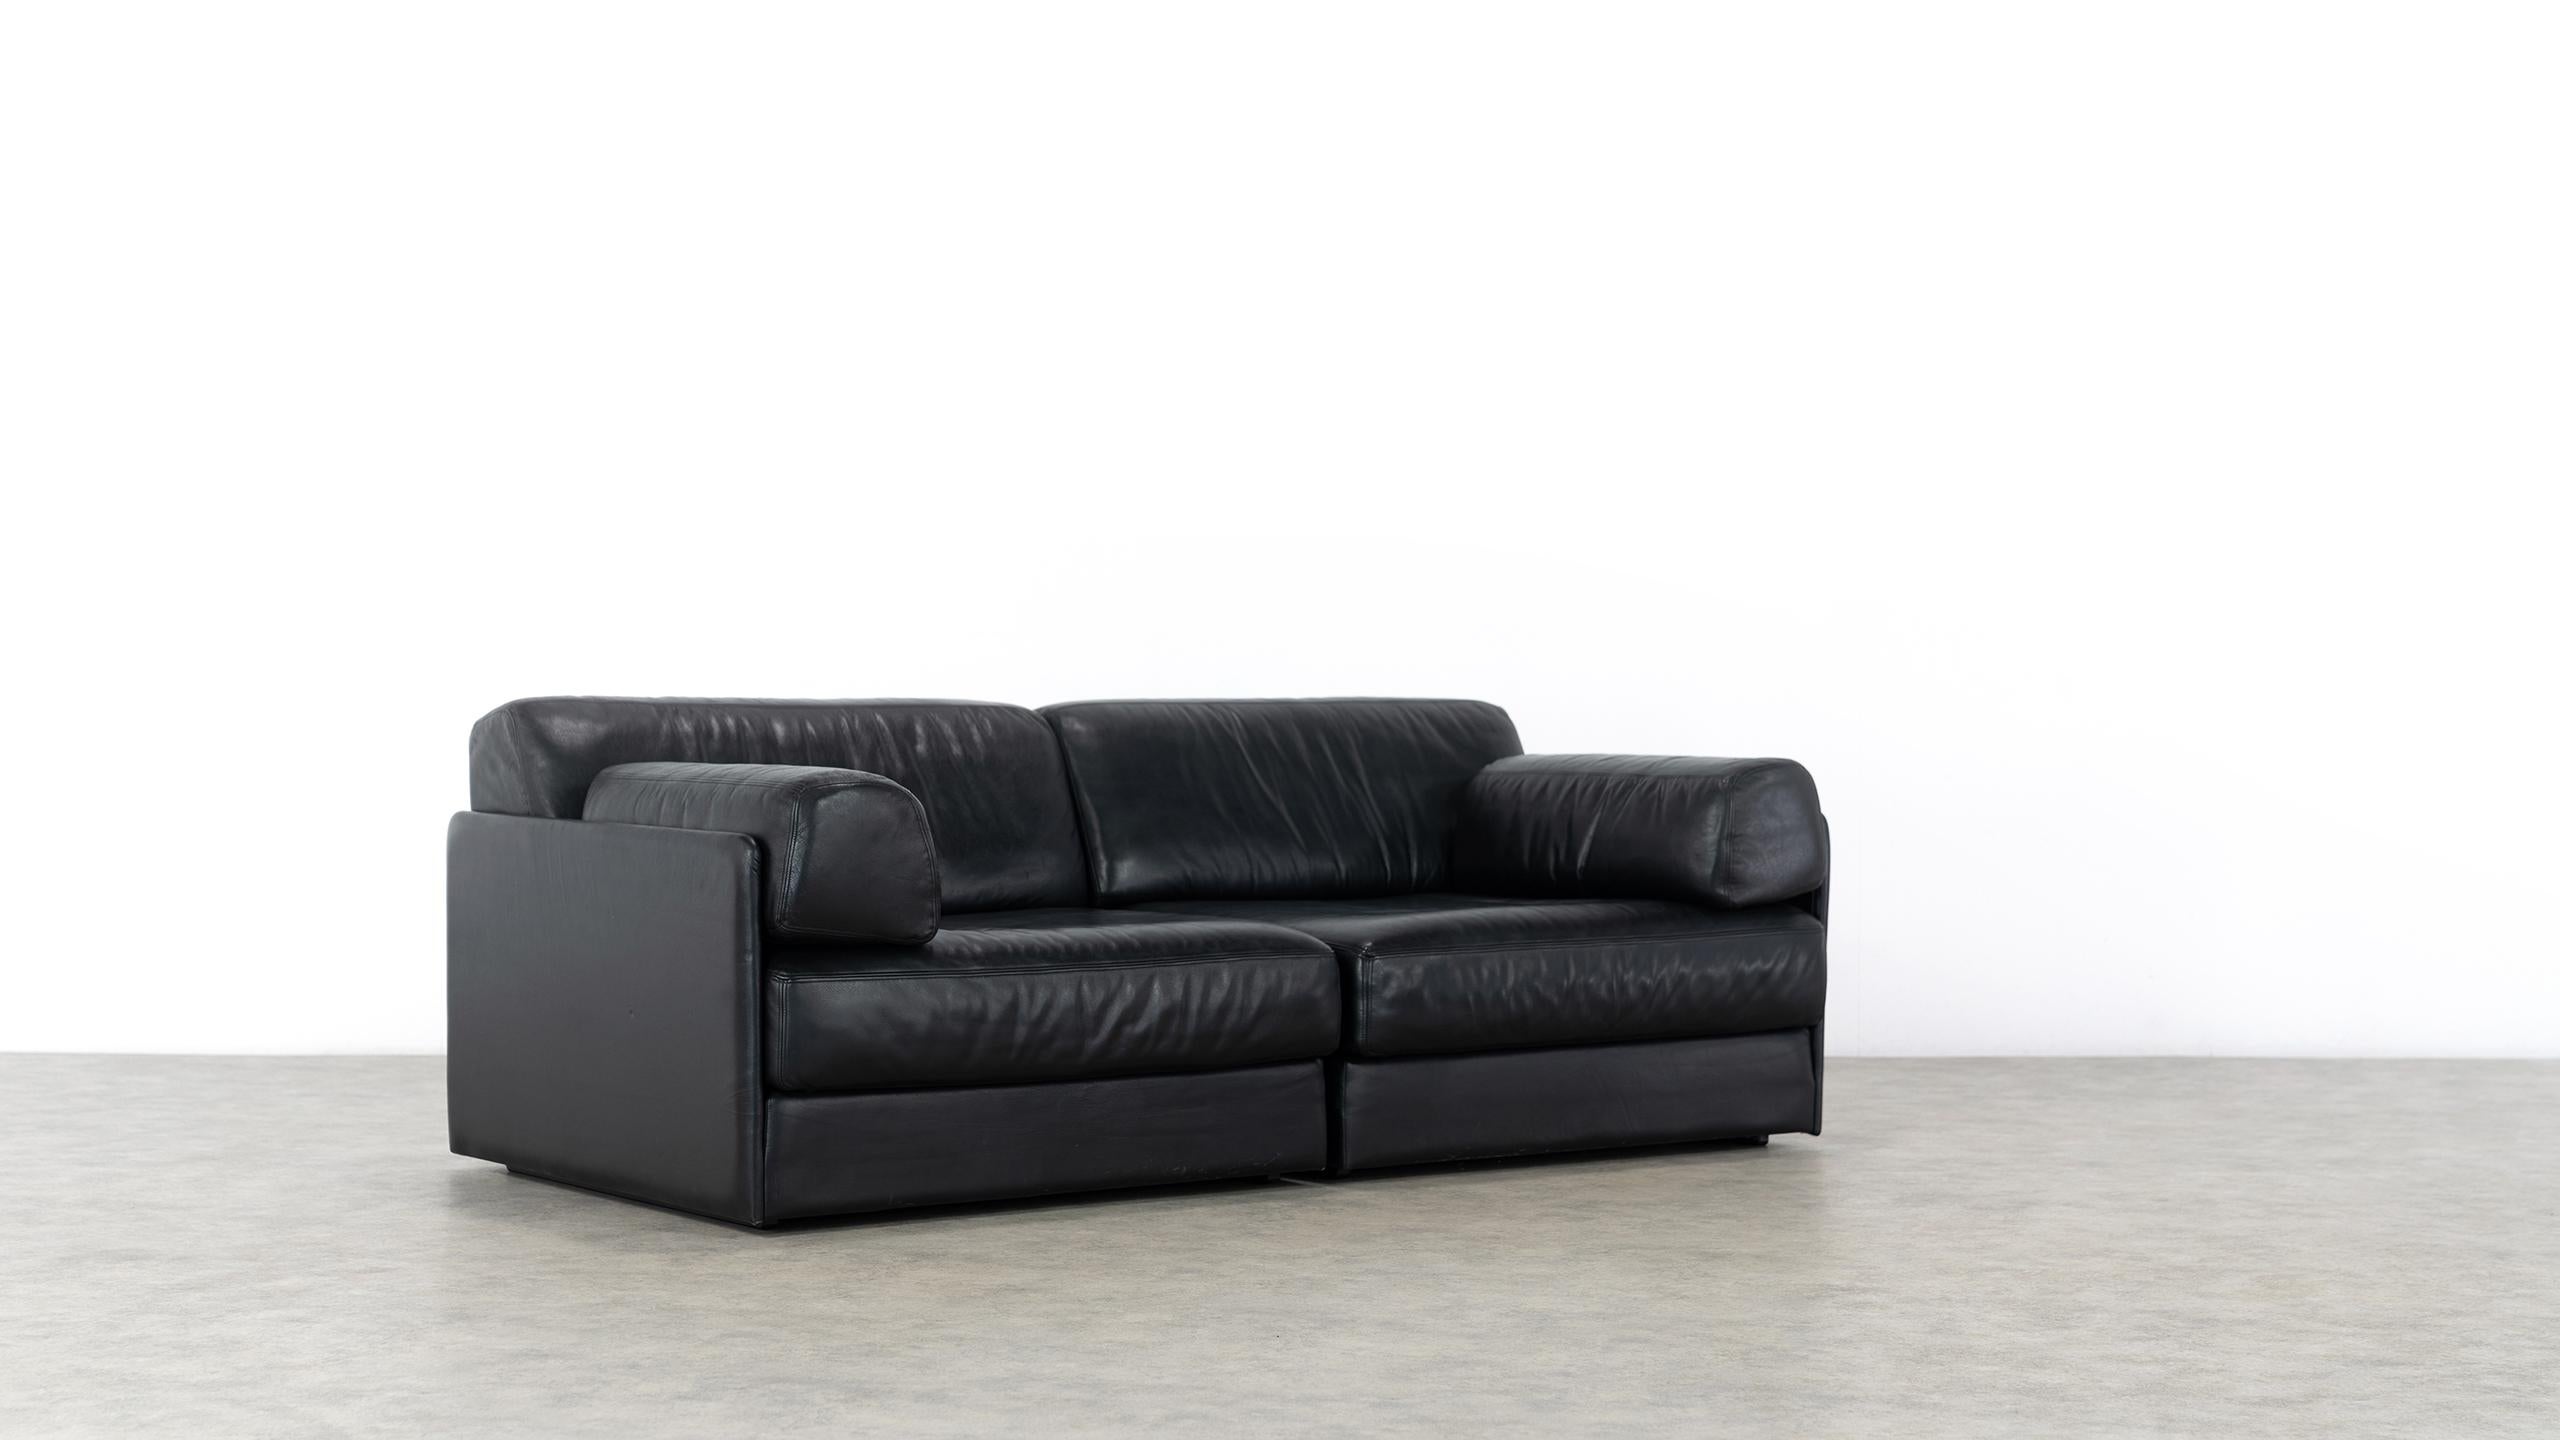 De Sede Ds76, Sofa & Daybed in Black Leather, 1972 by De Sede Design Team 2